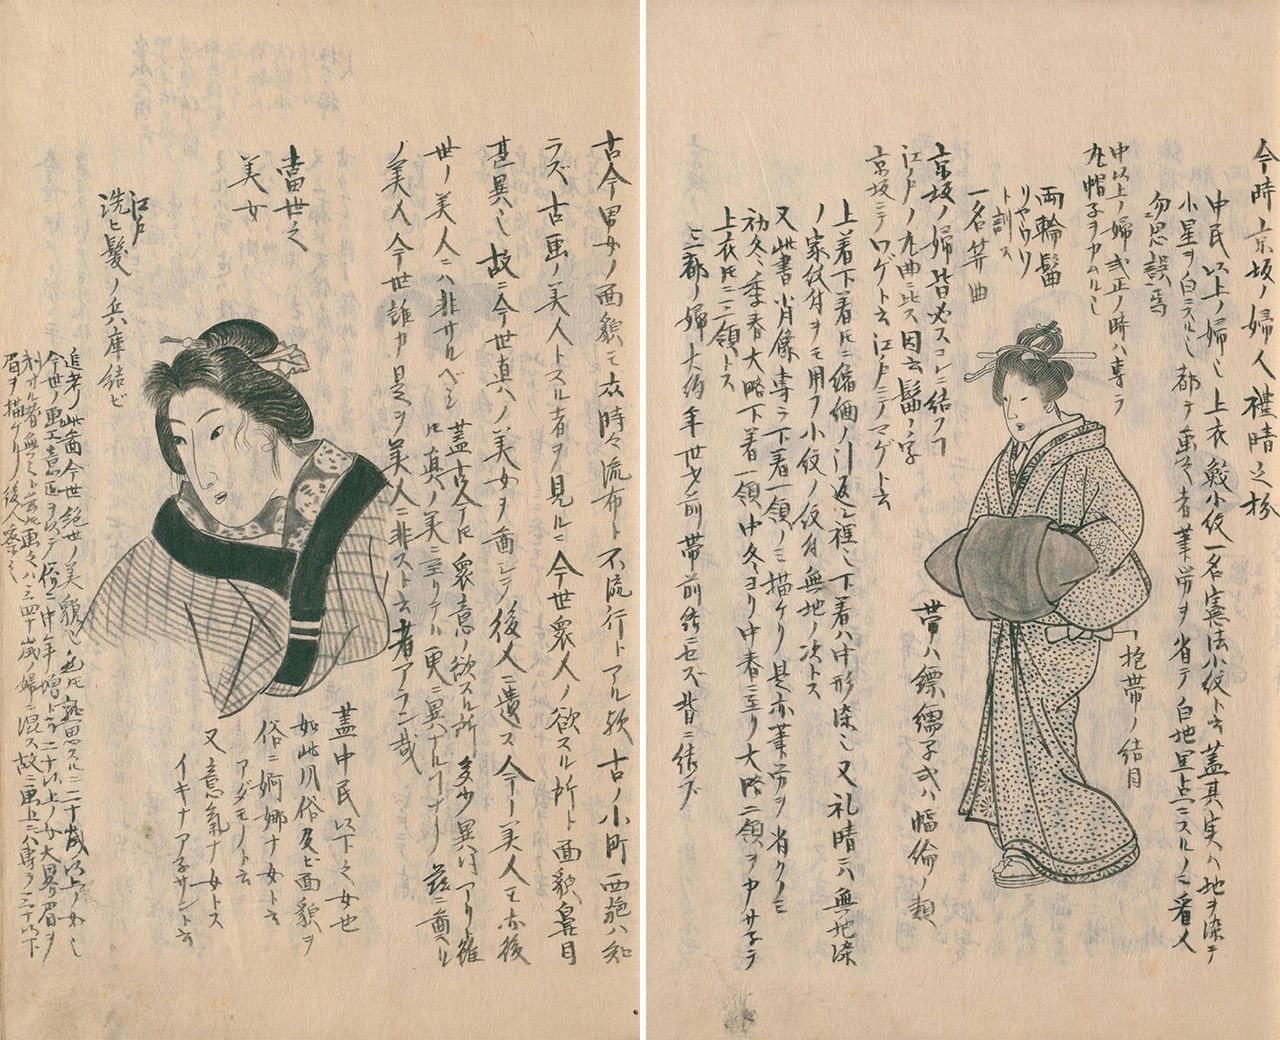 左边是《当世之美女 江户》，右边是《今时京坂之妇人》。我们现在所说的头饰，其用法在东西日本也都存在差异。